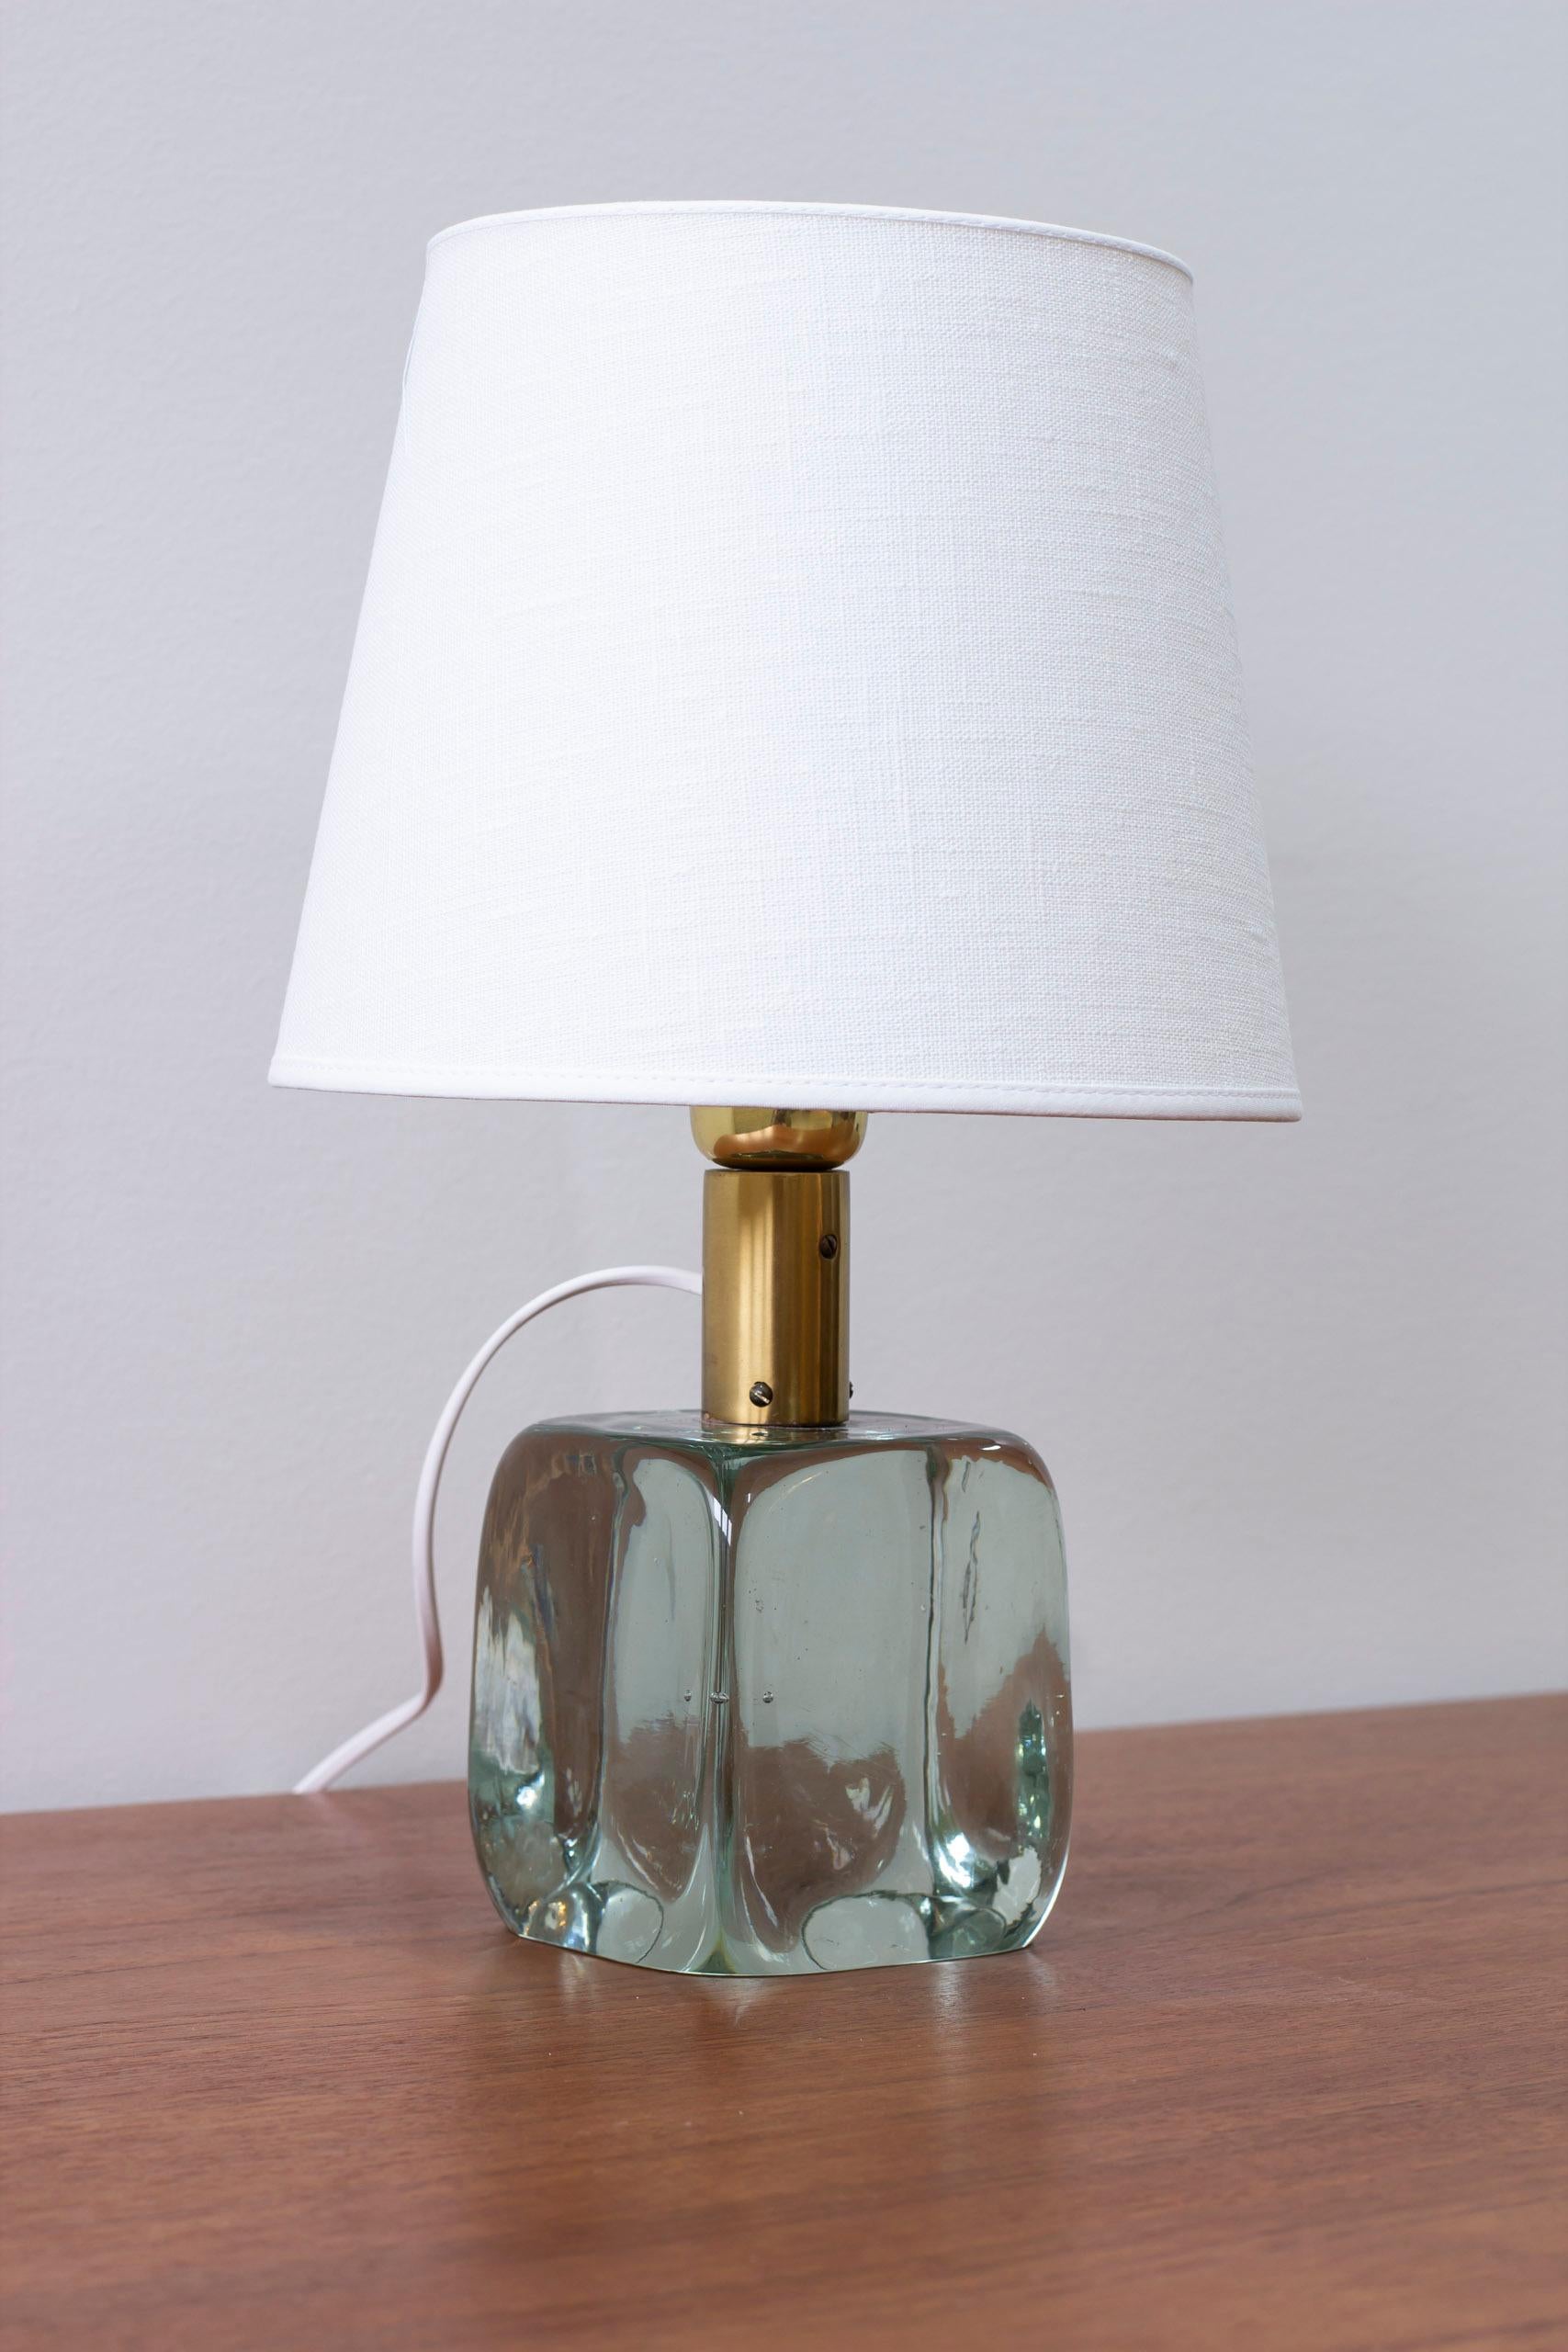 Lampe de table modèle 1819 conçue par Josef Frank. Produit en Suède par Svenskt Tenn, le moule en verre est soufflé par Reijmyre. Verre transparent épais soufflé au moule et laiton. Interrupteur du porte-lampe en état de marche. Très bon état